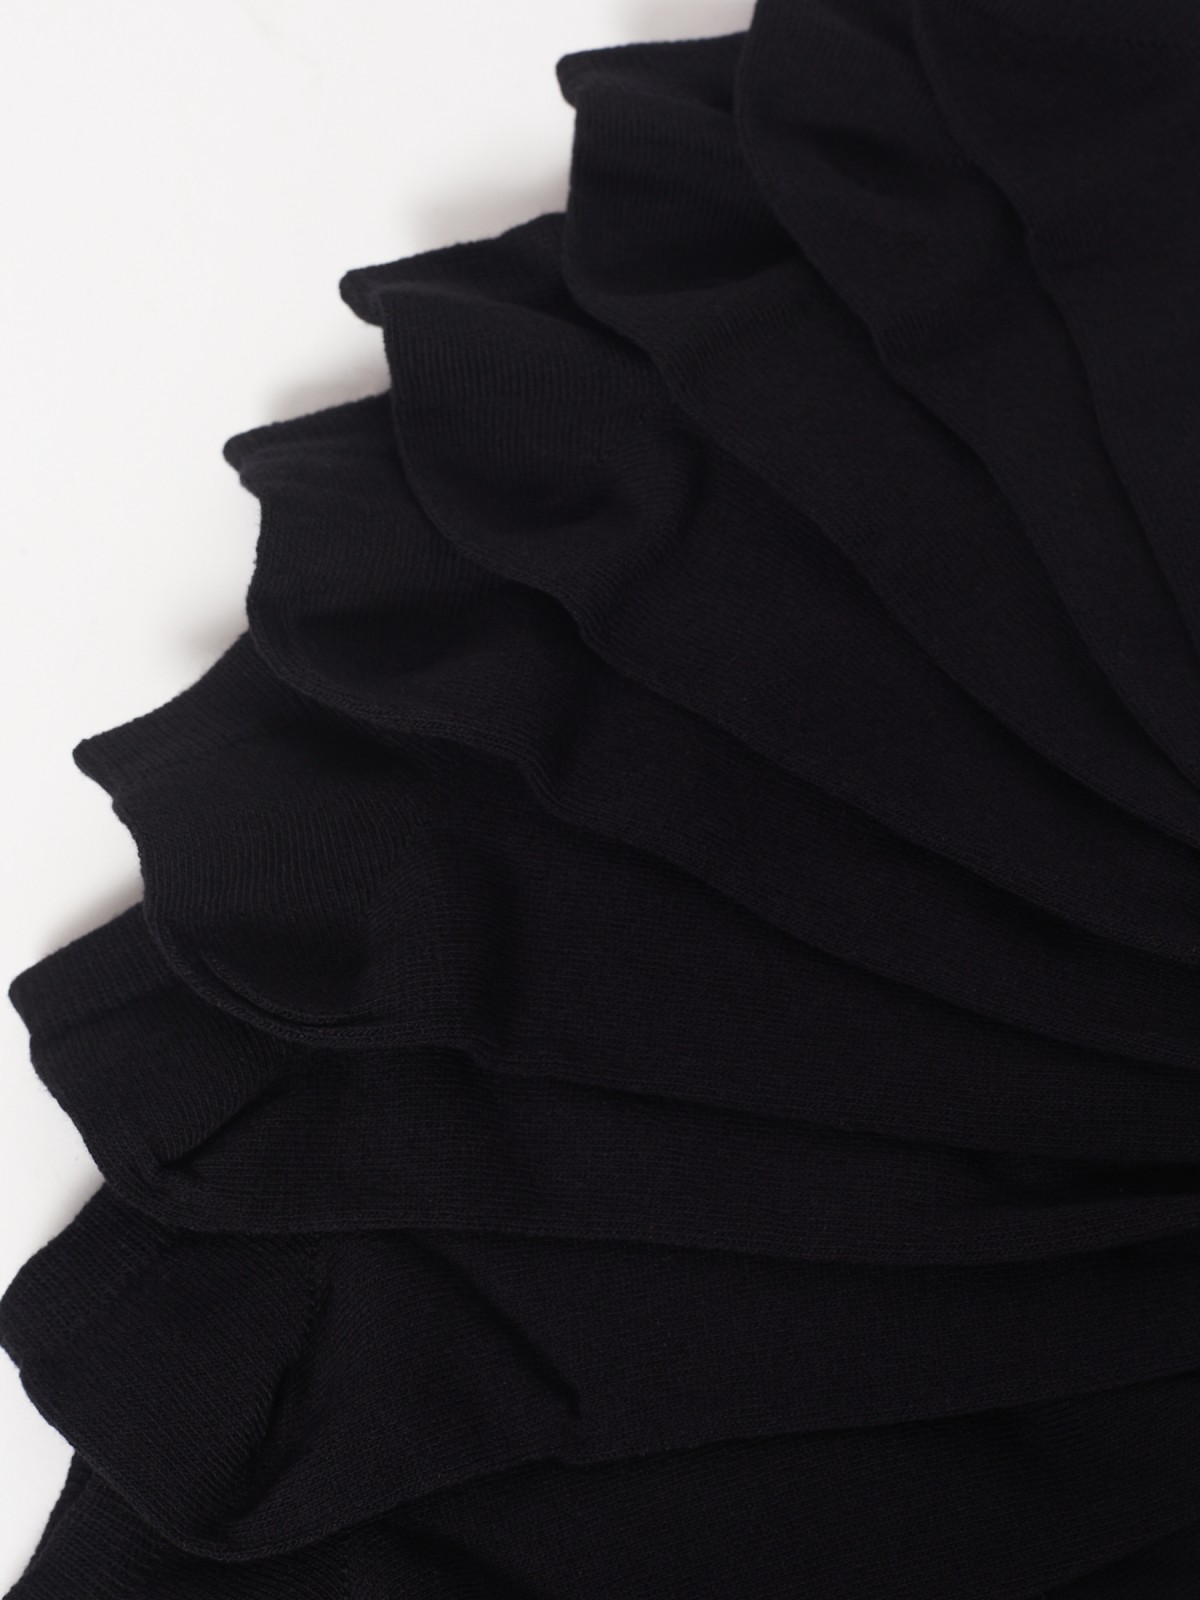 Набор коротких носков (5 пар в комплекте) zolla 01231998J195, цвет черный, размер 25-27 - фото 3